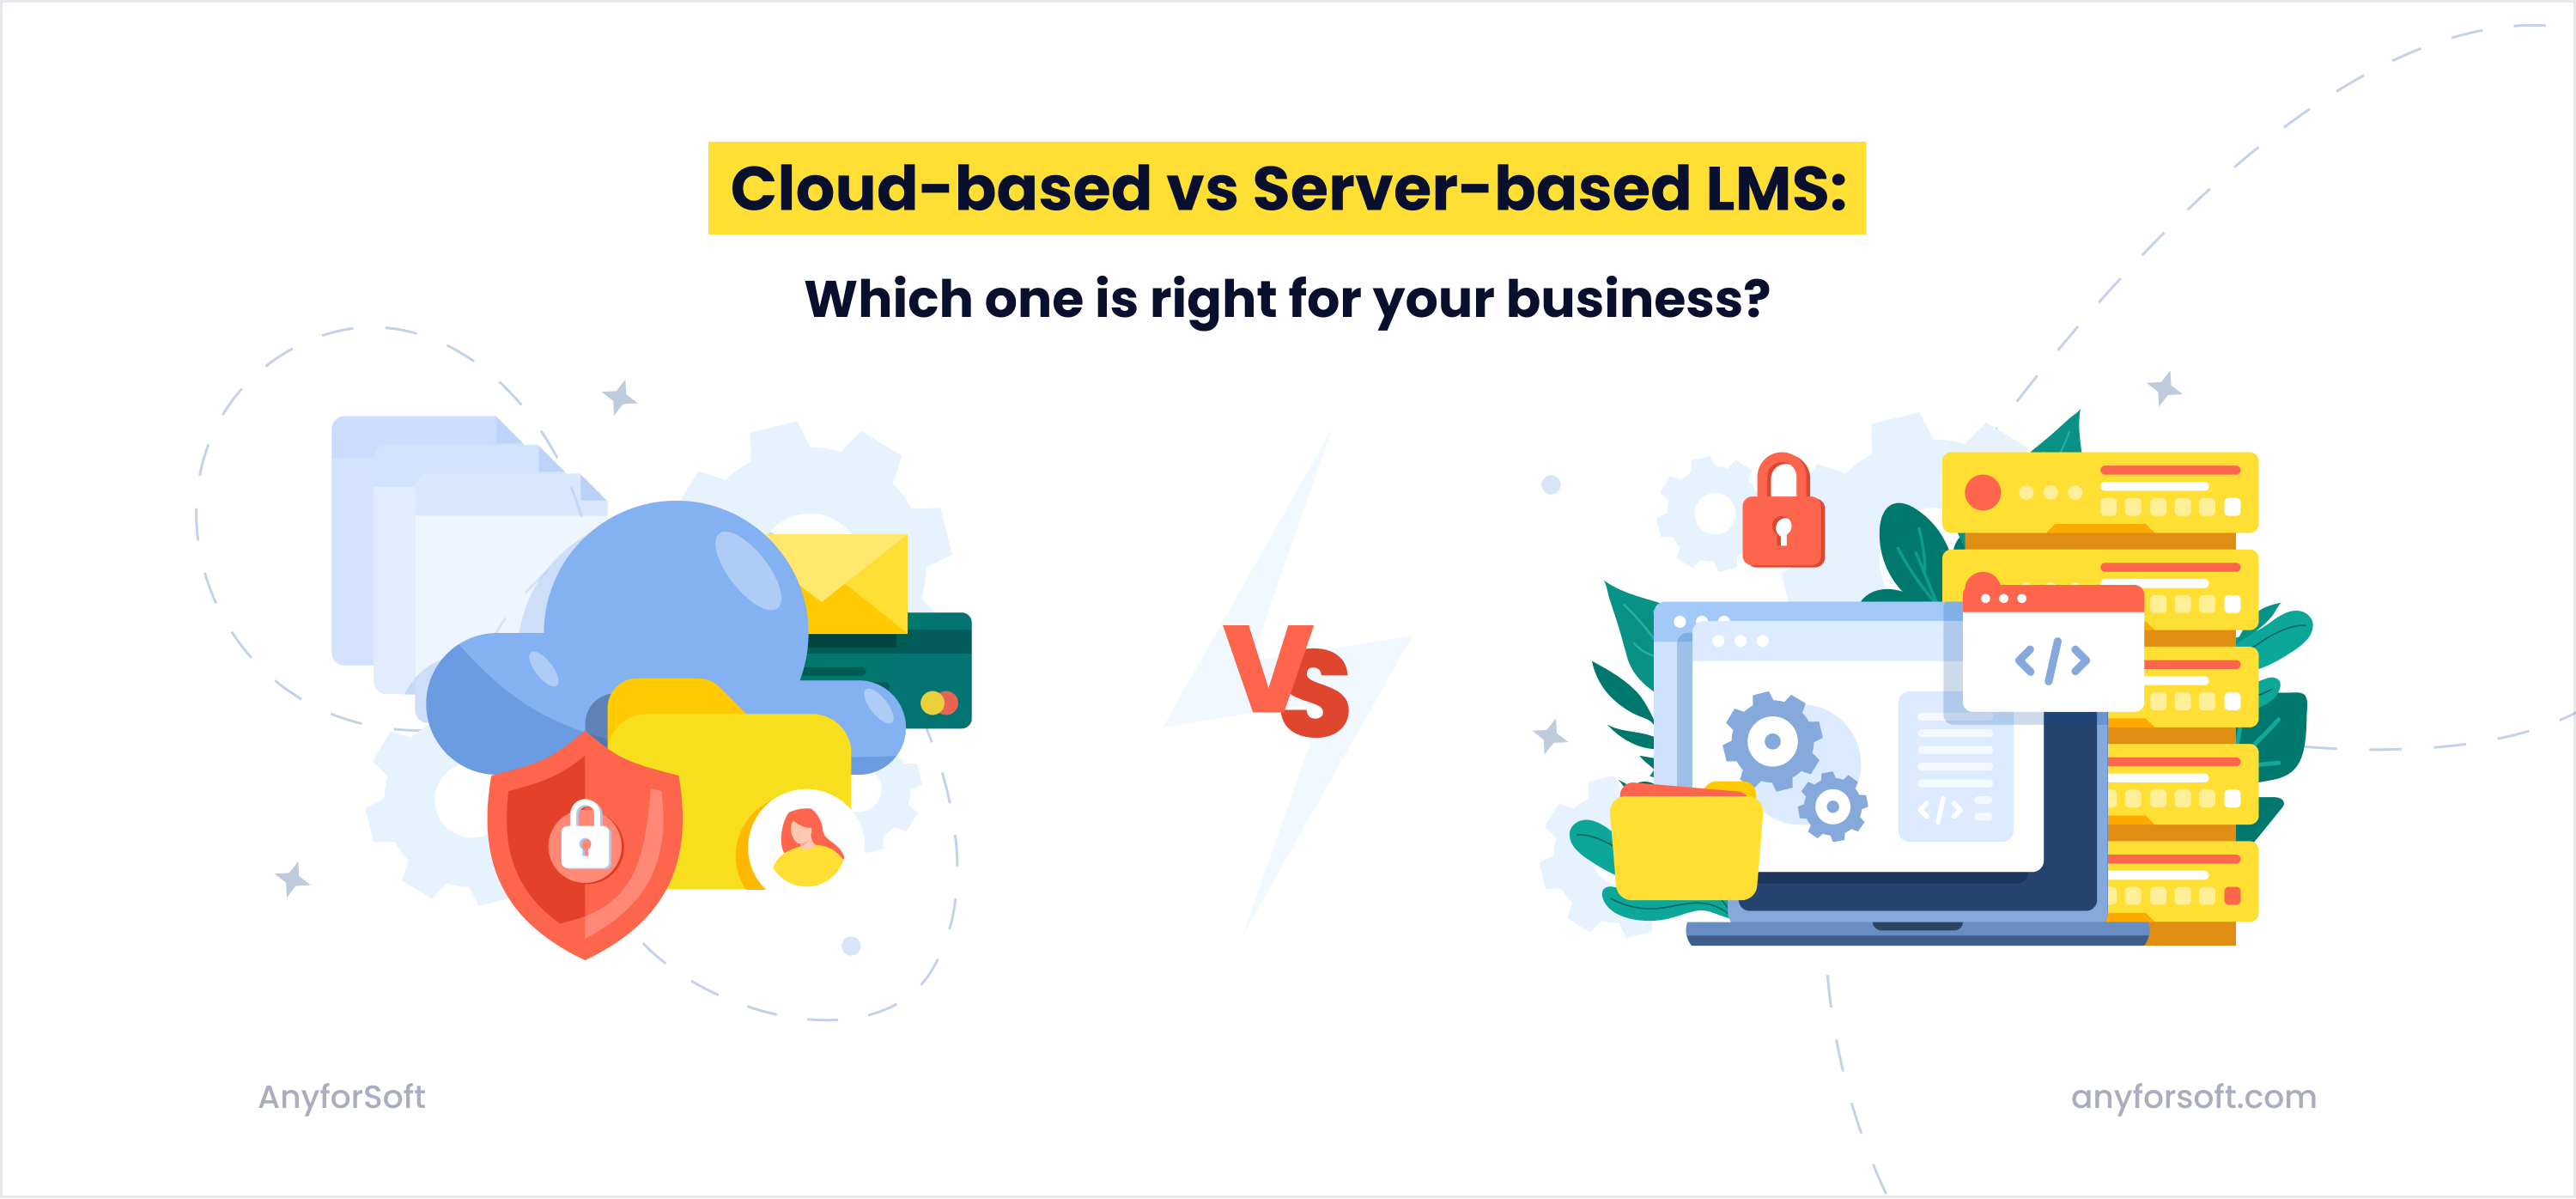 Cloud-based vs server-based LMS